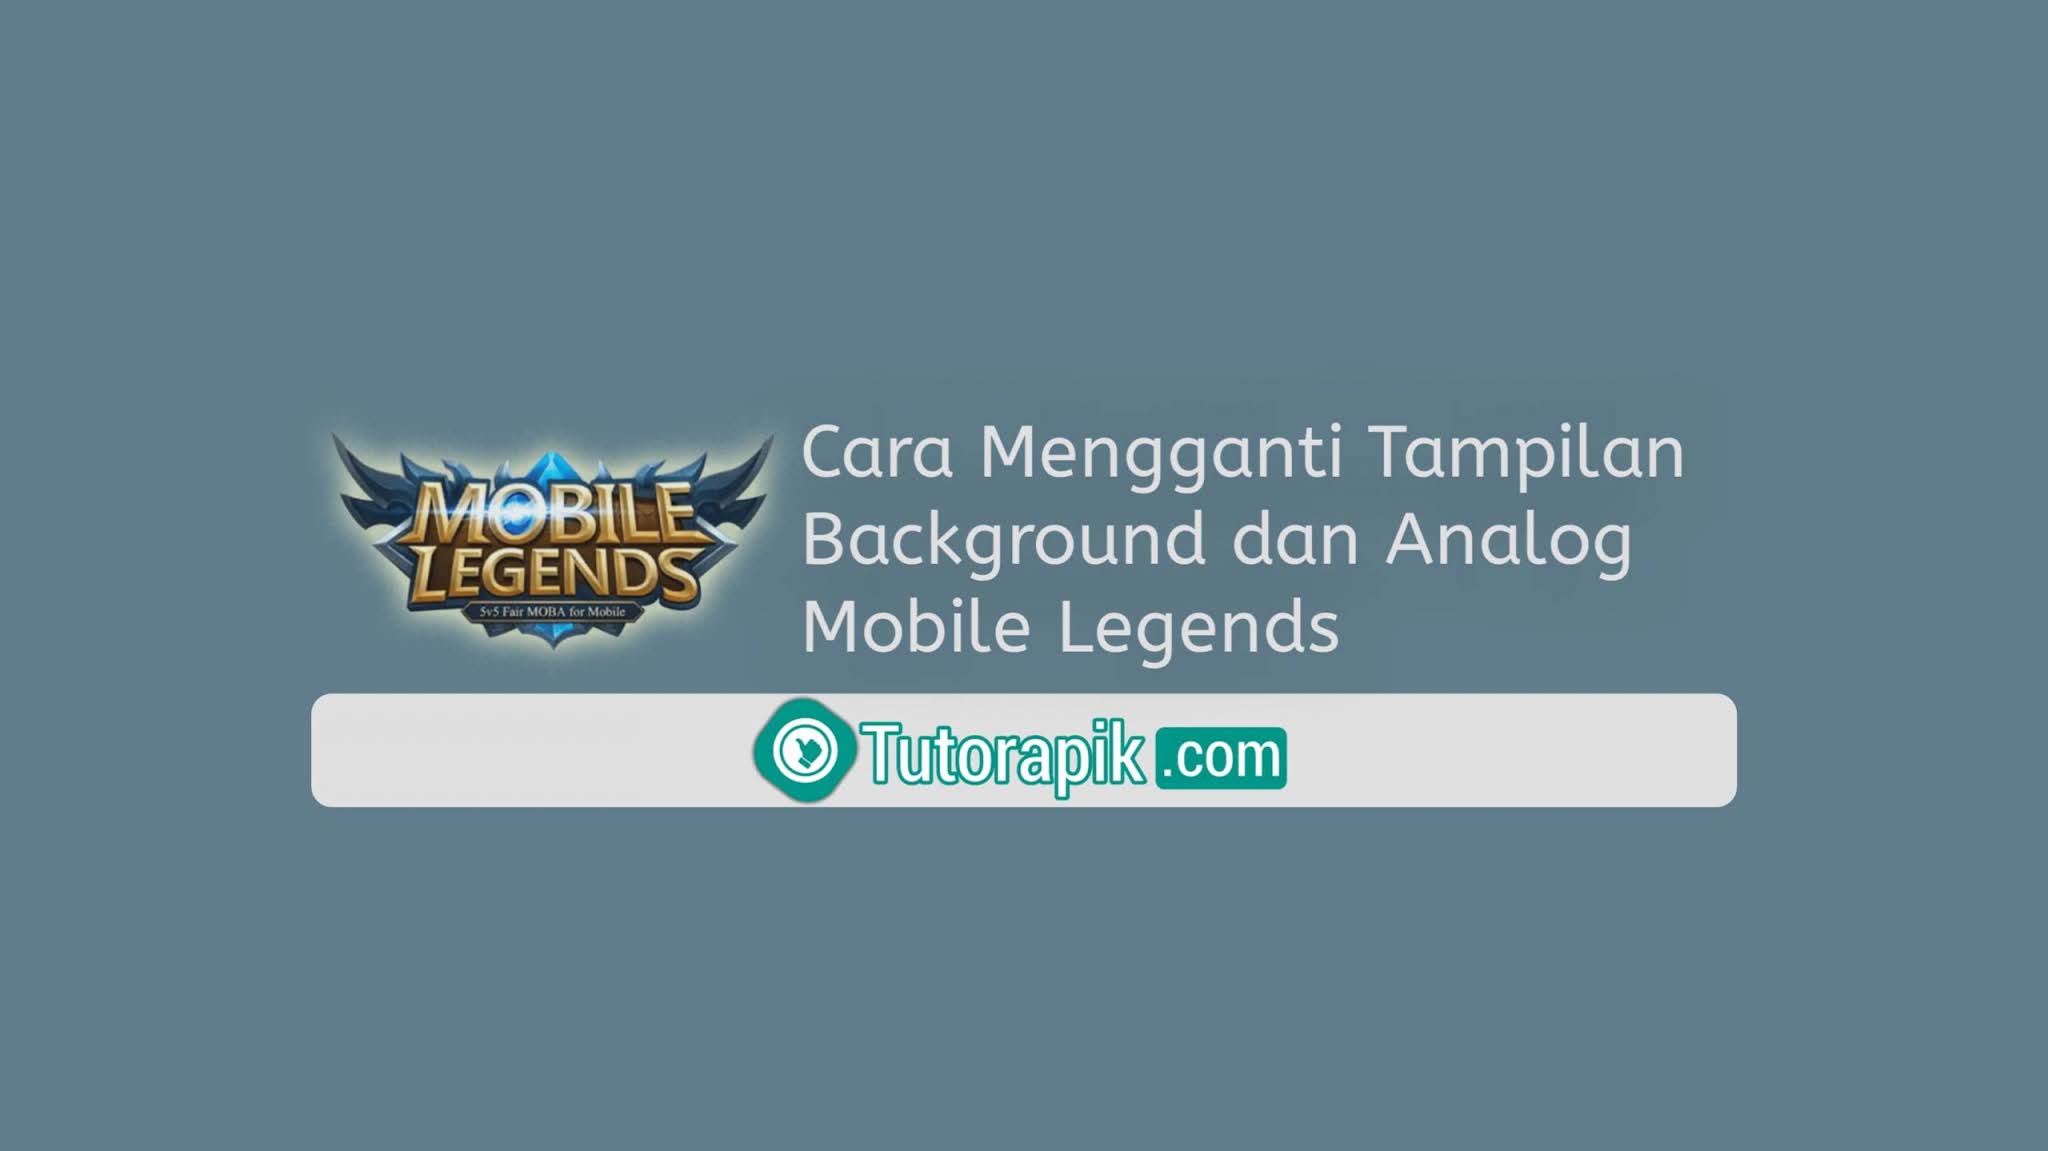 Cara Mengganti Tampilan Background Dan Analog Mobile Legends 2021 Terbaru Tutorapikcom